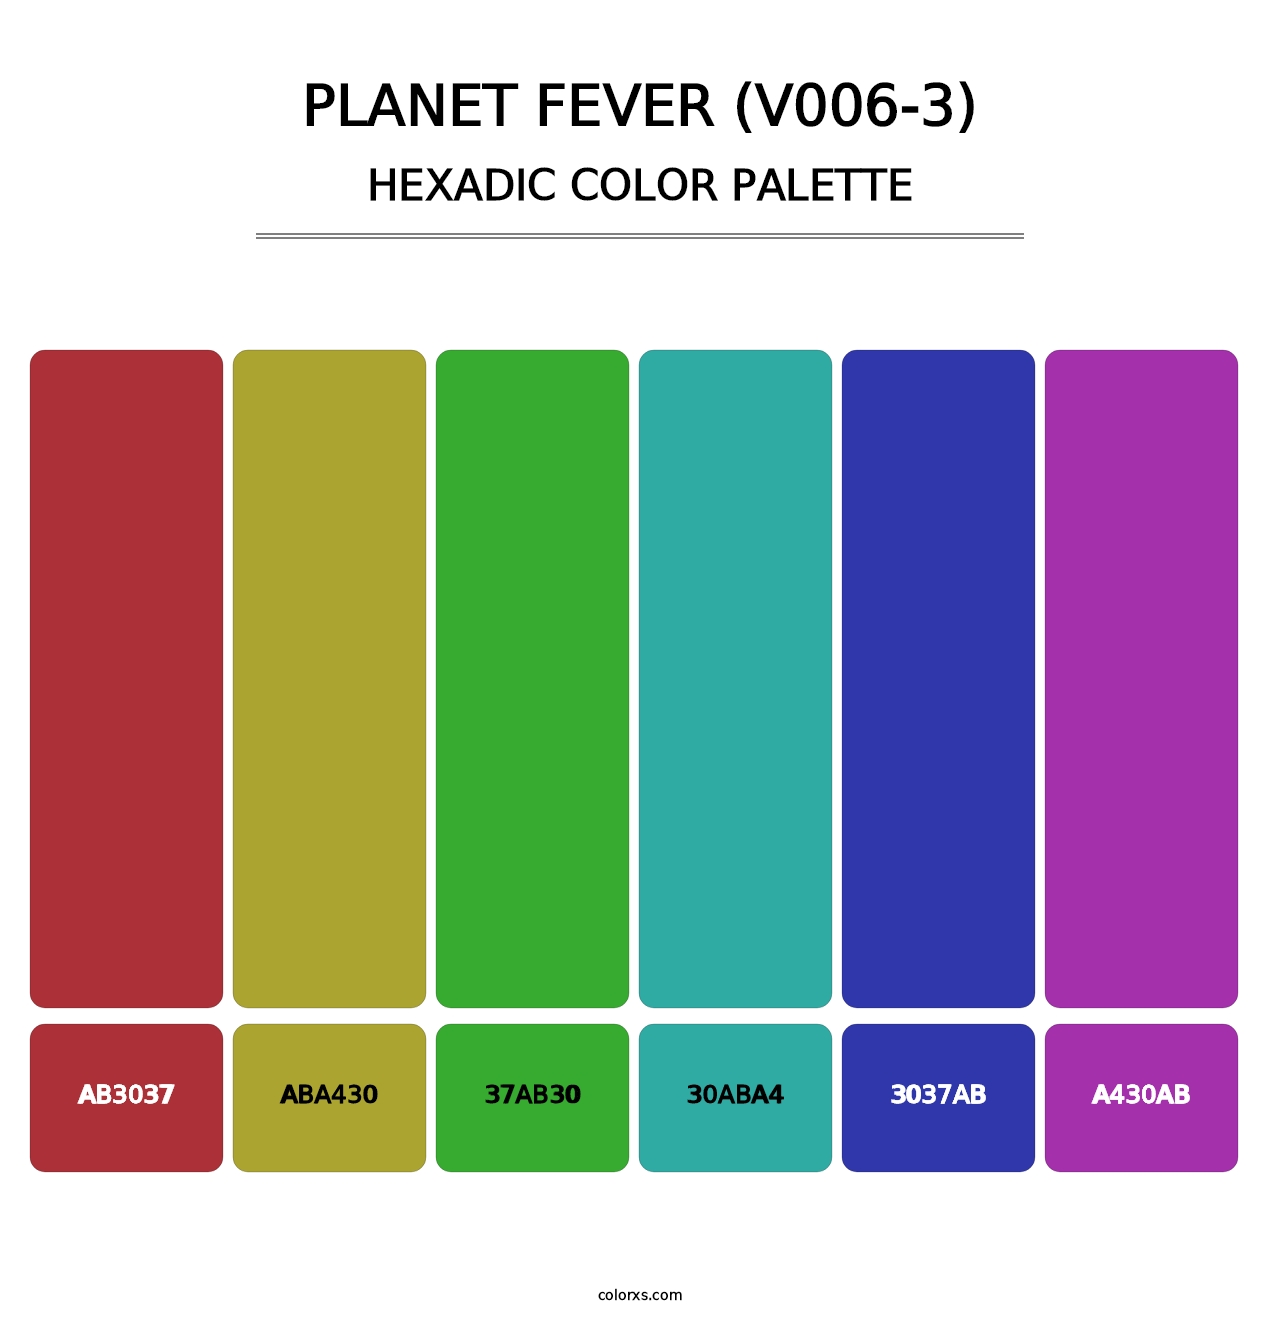 Planet Fever (V006-3) - Hexadic Color Palette